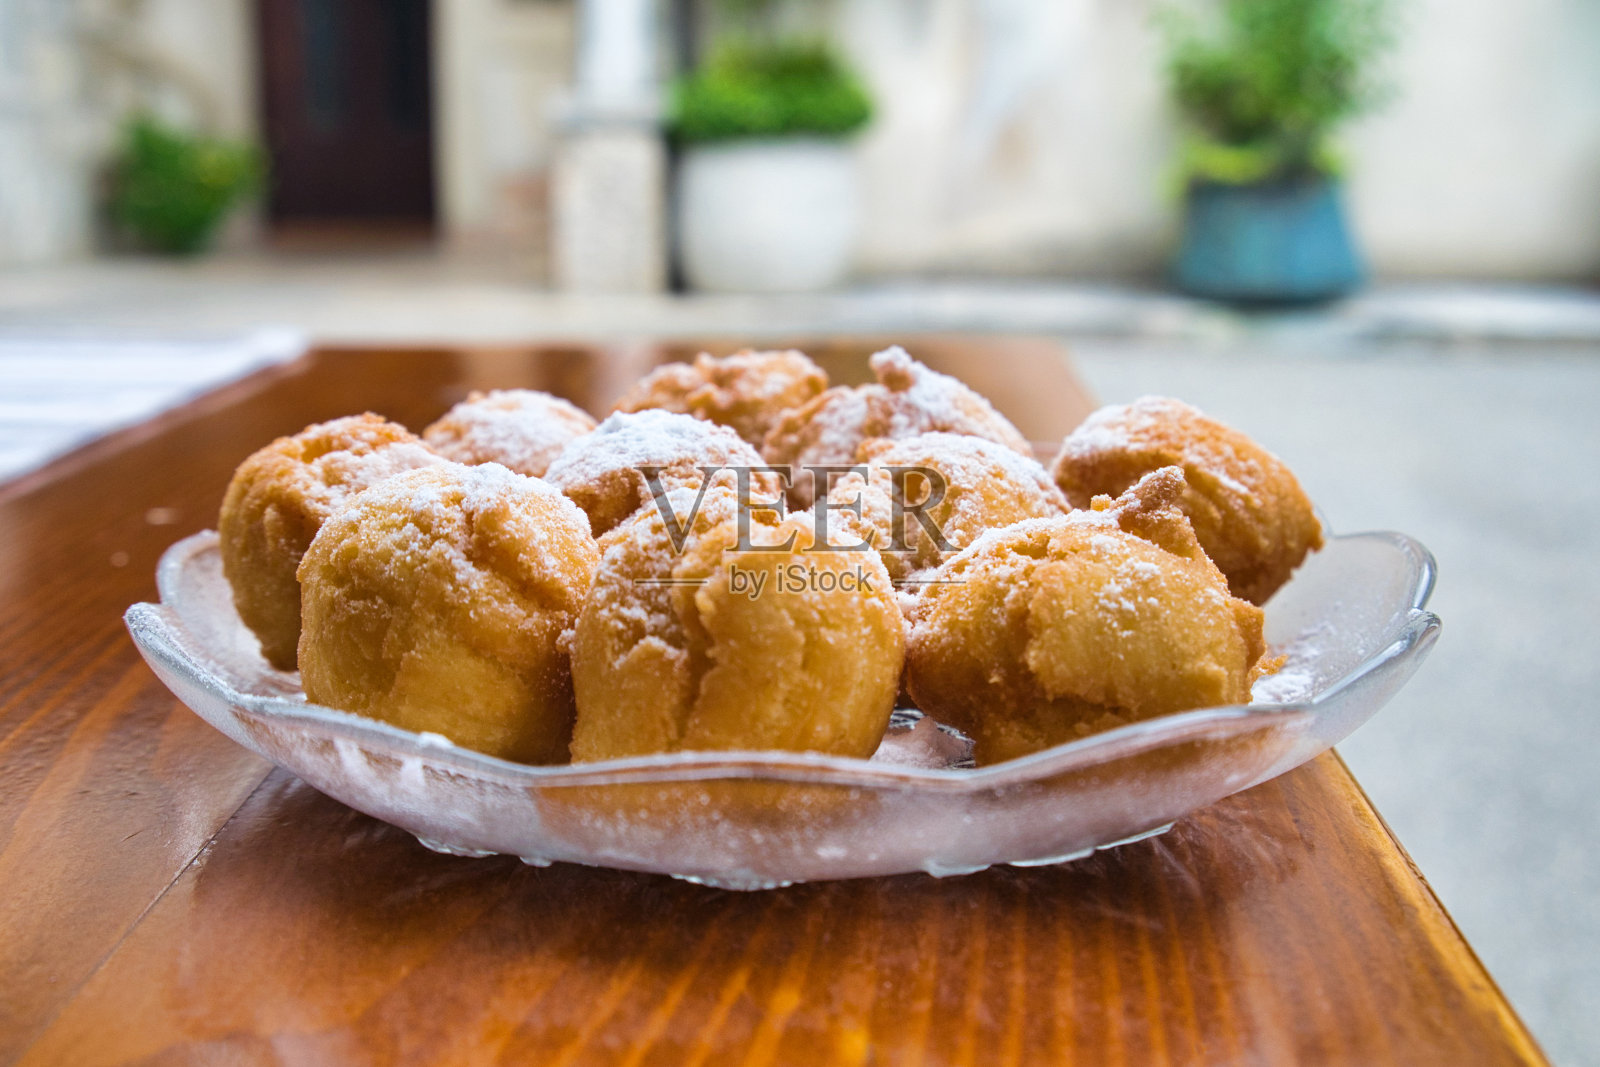 Fritule是克罗地亚的一种小油炸甜甜圈，在克罗地亚很受欢迎，尤其是在圣诞节期间。照片摄影图片